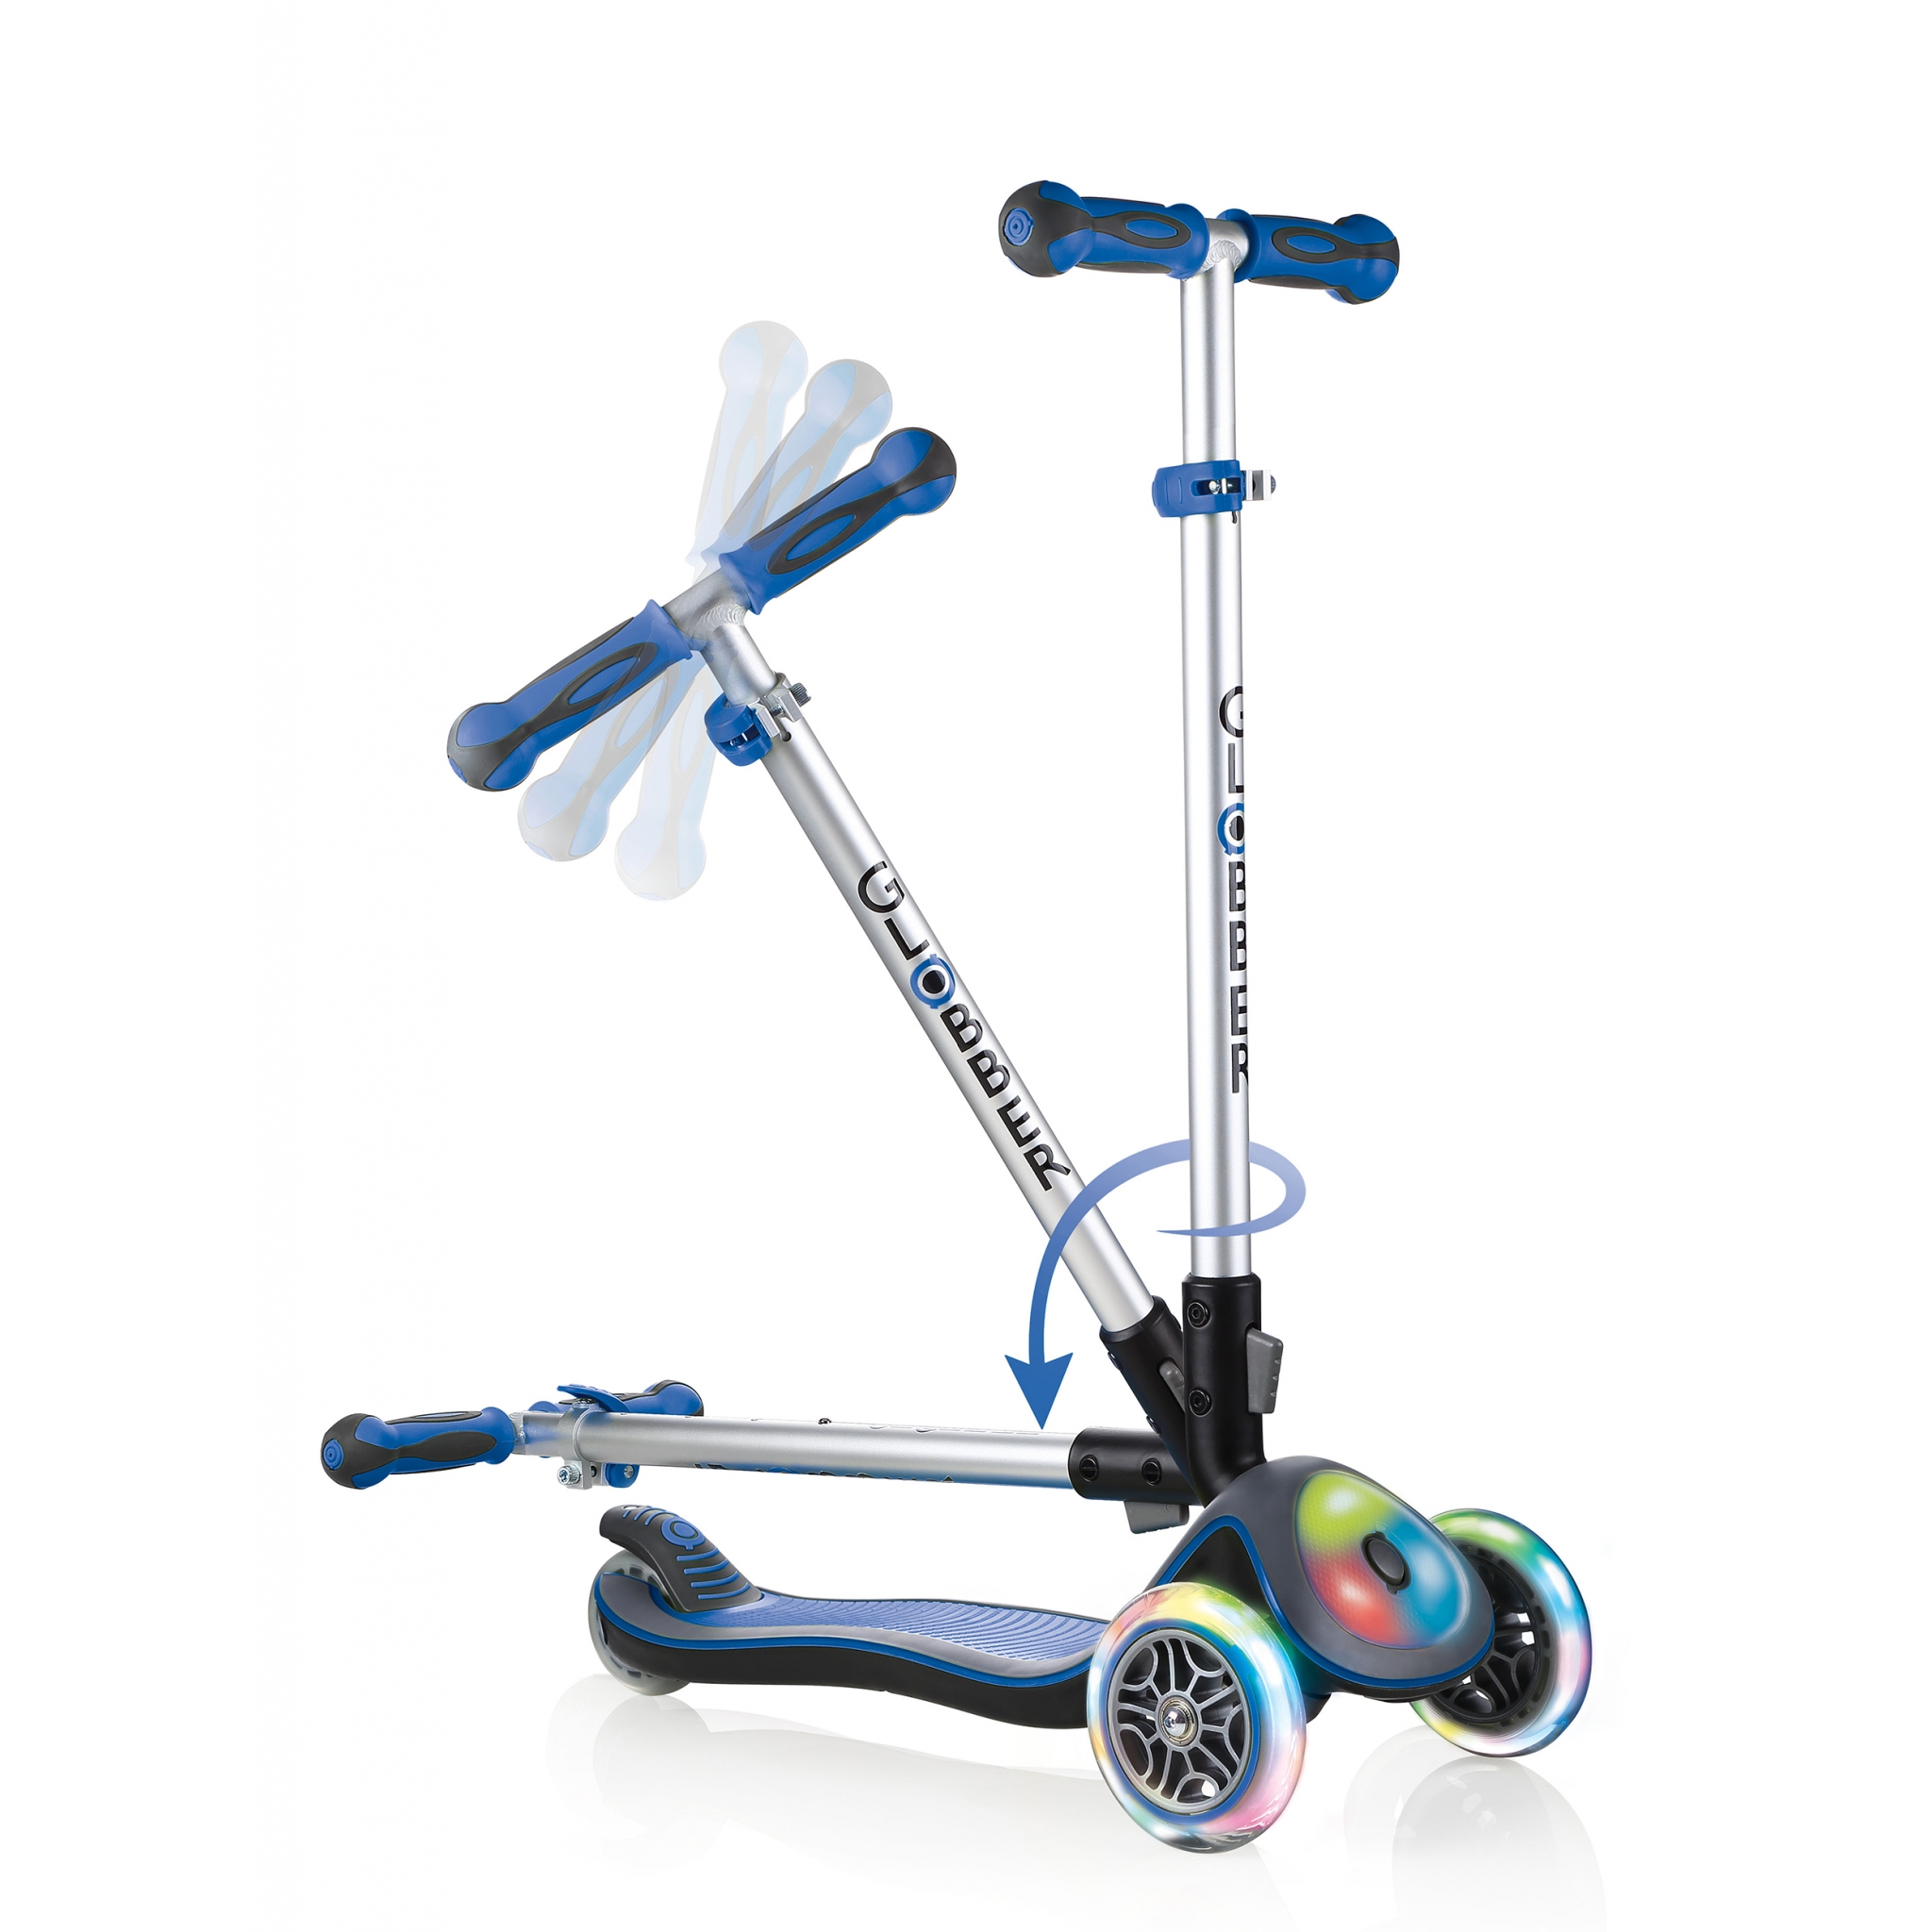  Globber - Scooter Elite Deluxe de 3 ruedas para niños de 3 a 4  años de altura ajustable, sistema plegable patentado y bloqueo de estrella  para niñas o niños, cuerpo reforzado